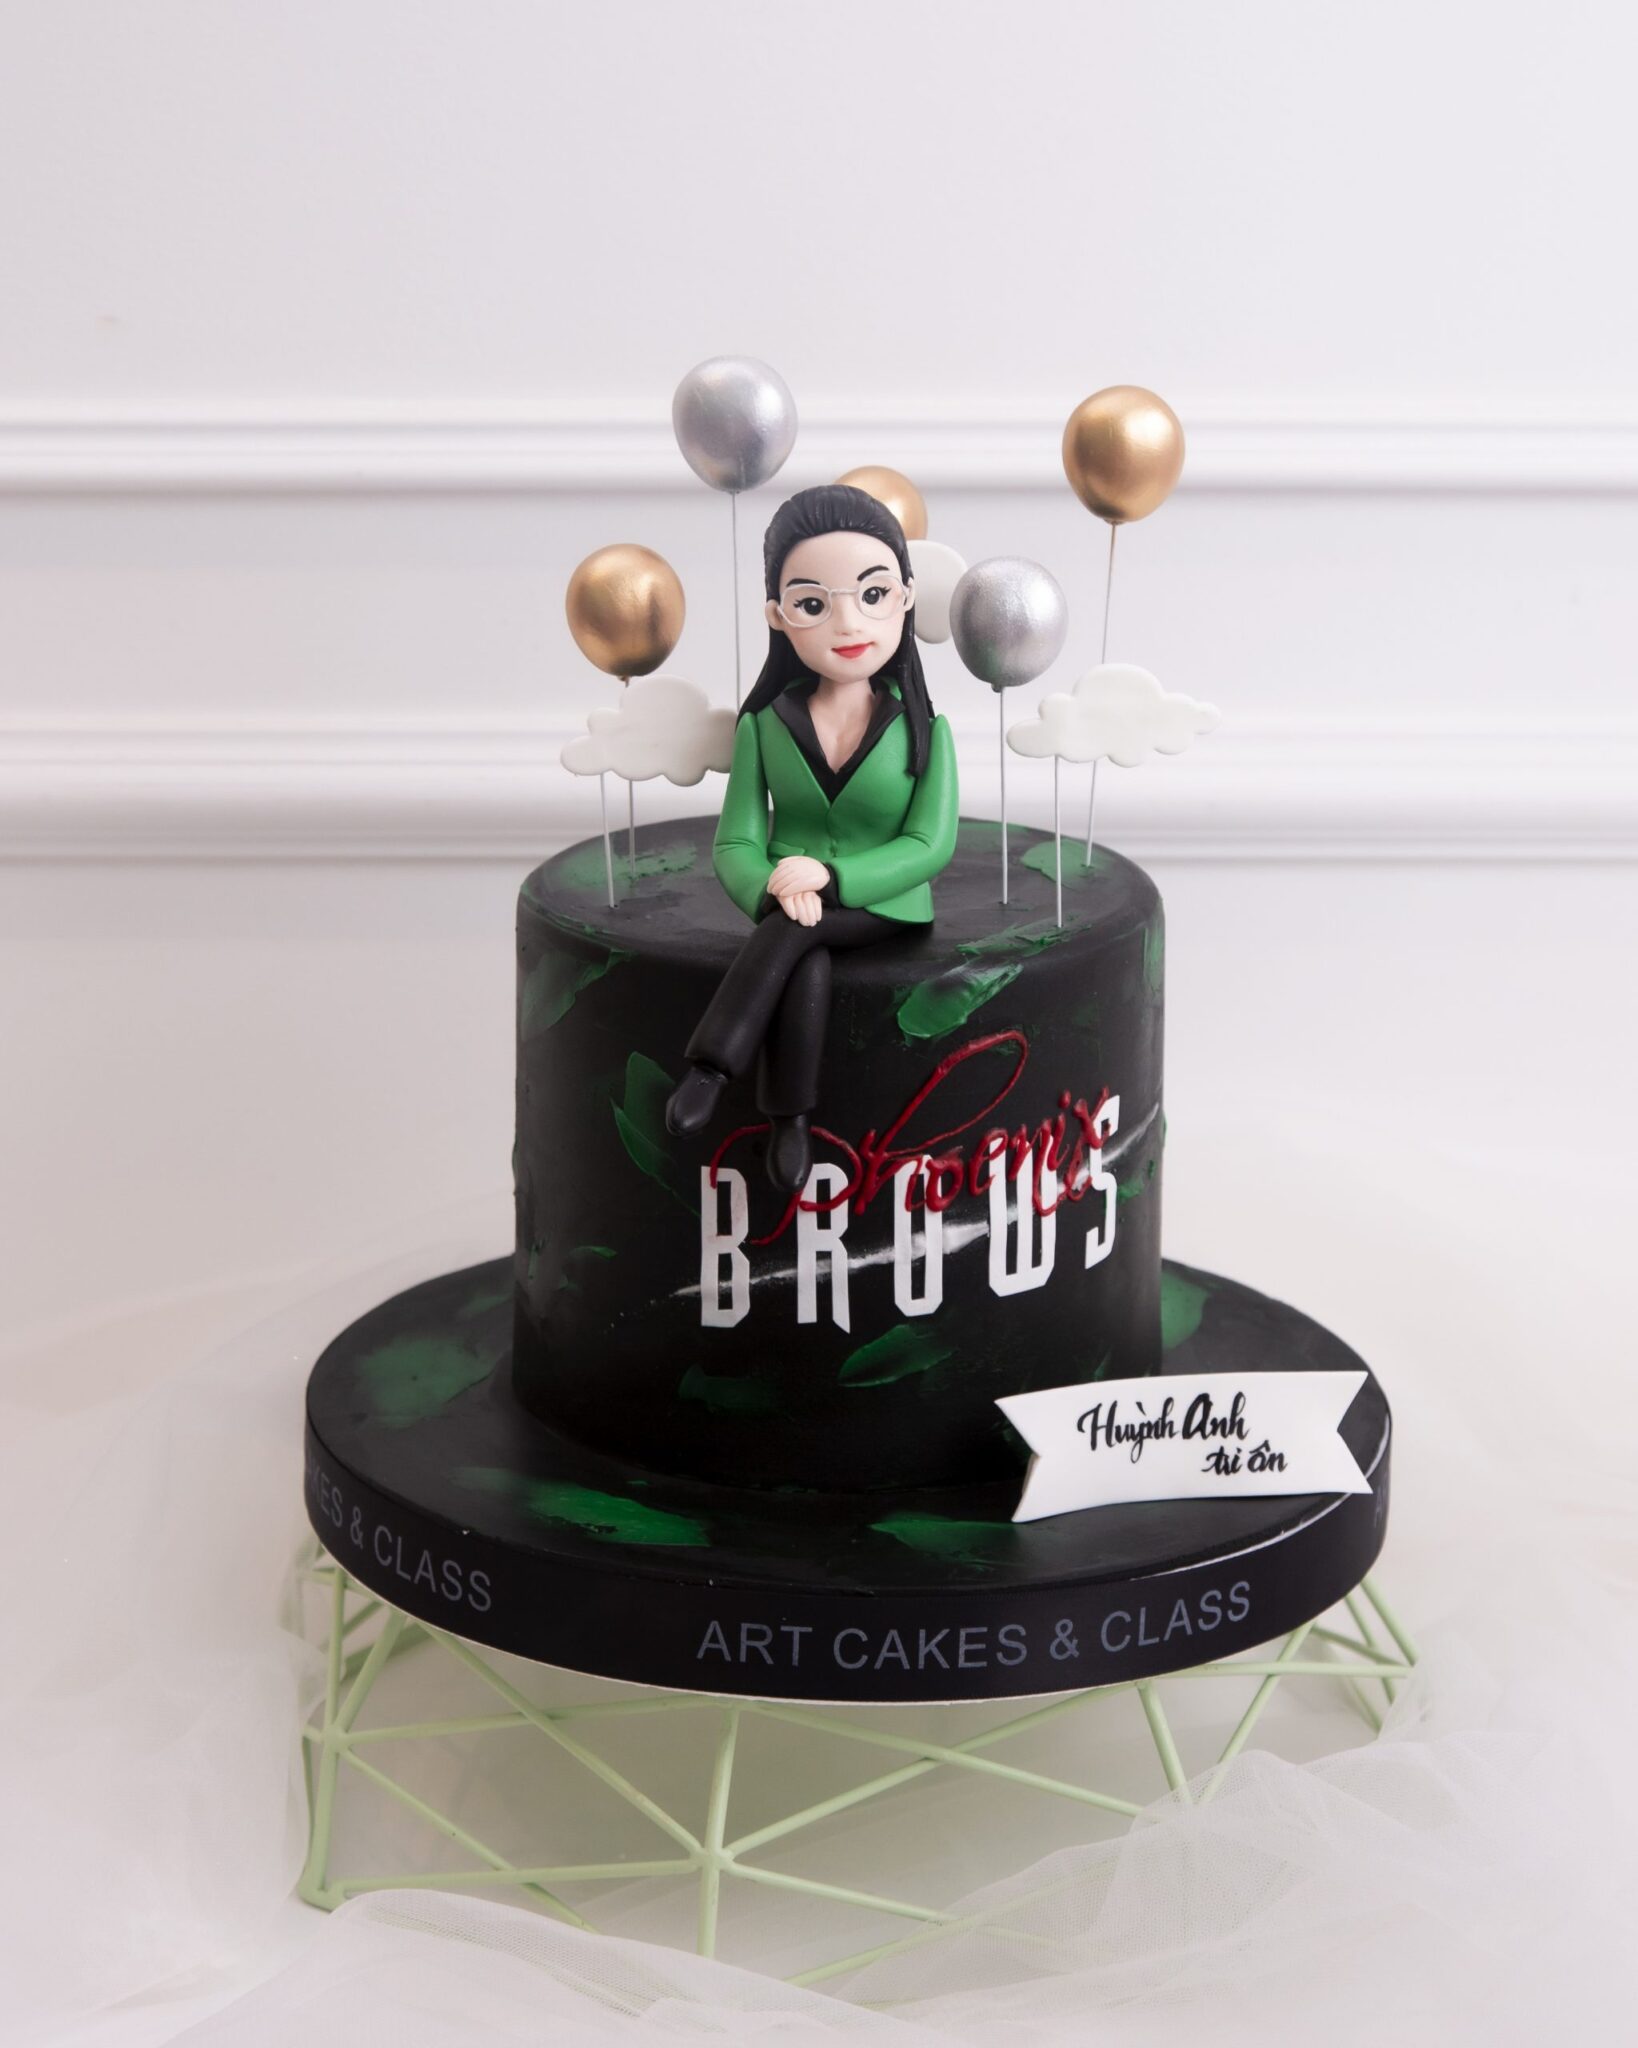 Bánh sinh nhật hiện đại tạo hình chị Quỳnh Trân xinh đẹp được lấy từ ý tưởng bởi những người yêu mến chị phối cùng sắc đen và xanh lá vô cùng bắt mắt.